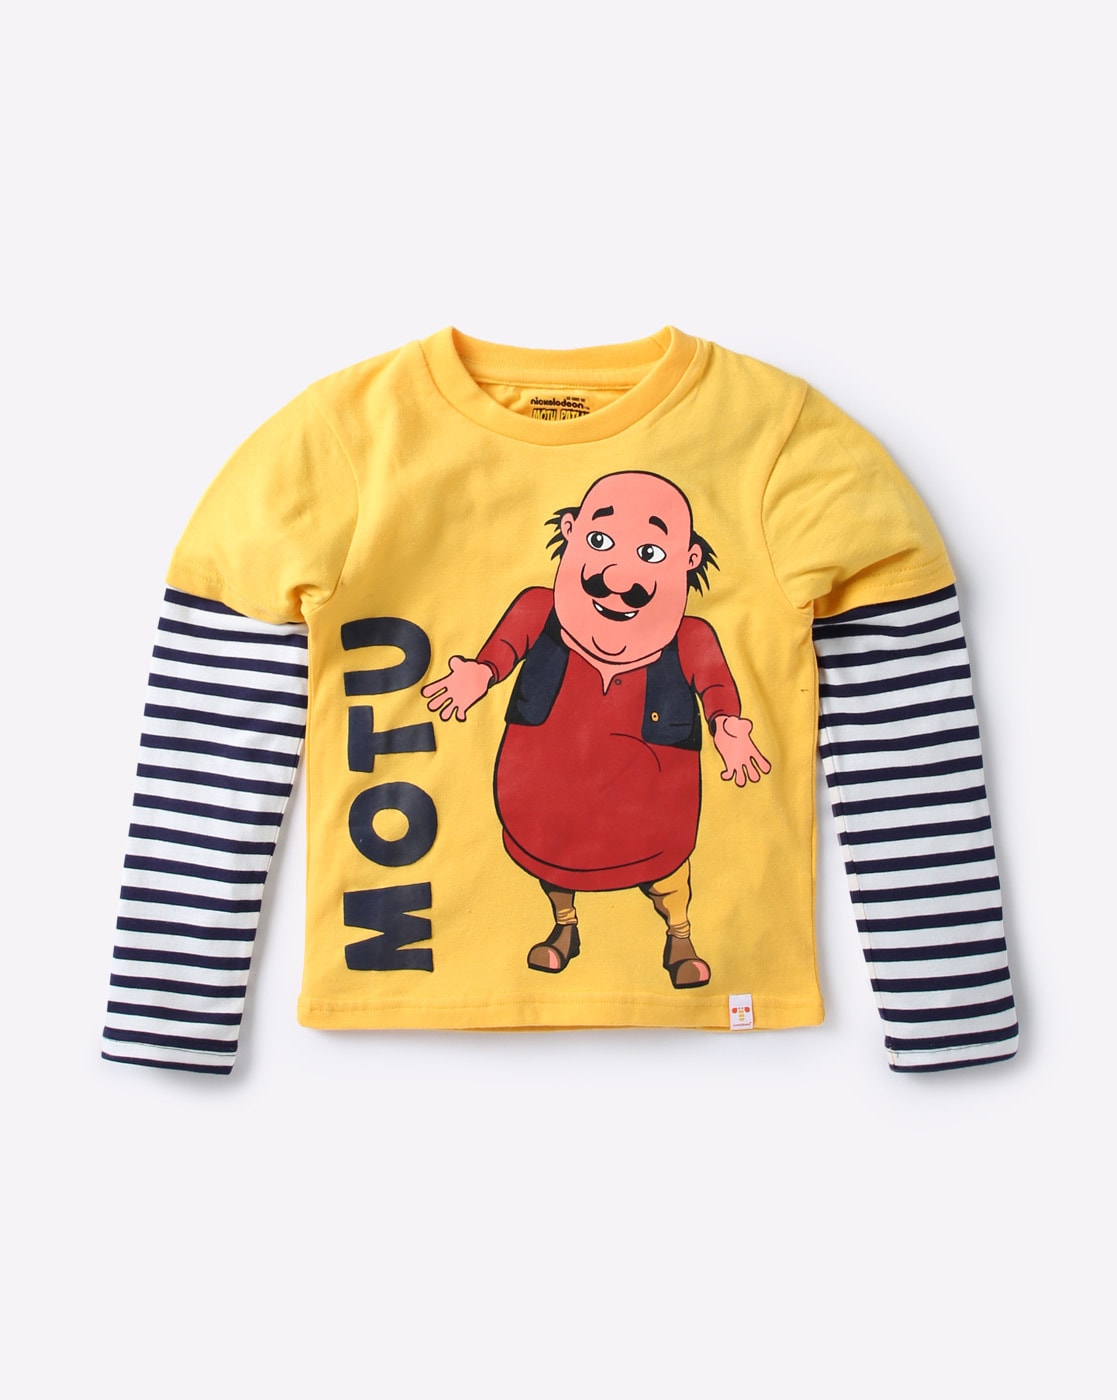 buy yellow tshirts for infants by motu patlu online ajio com